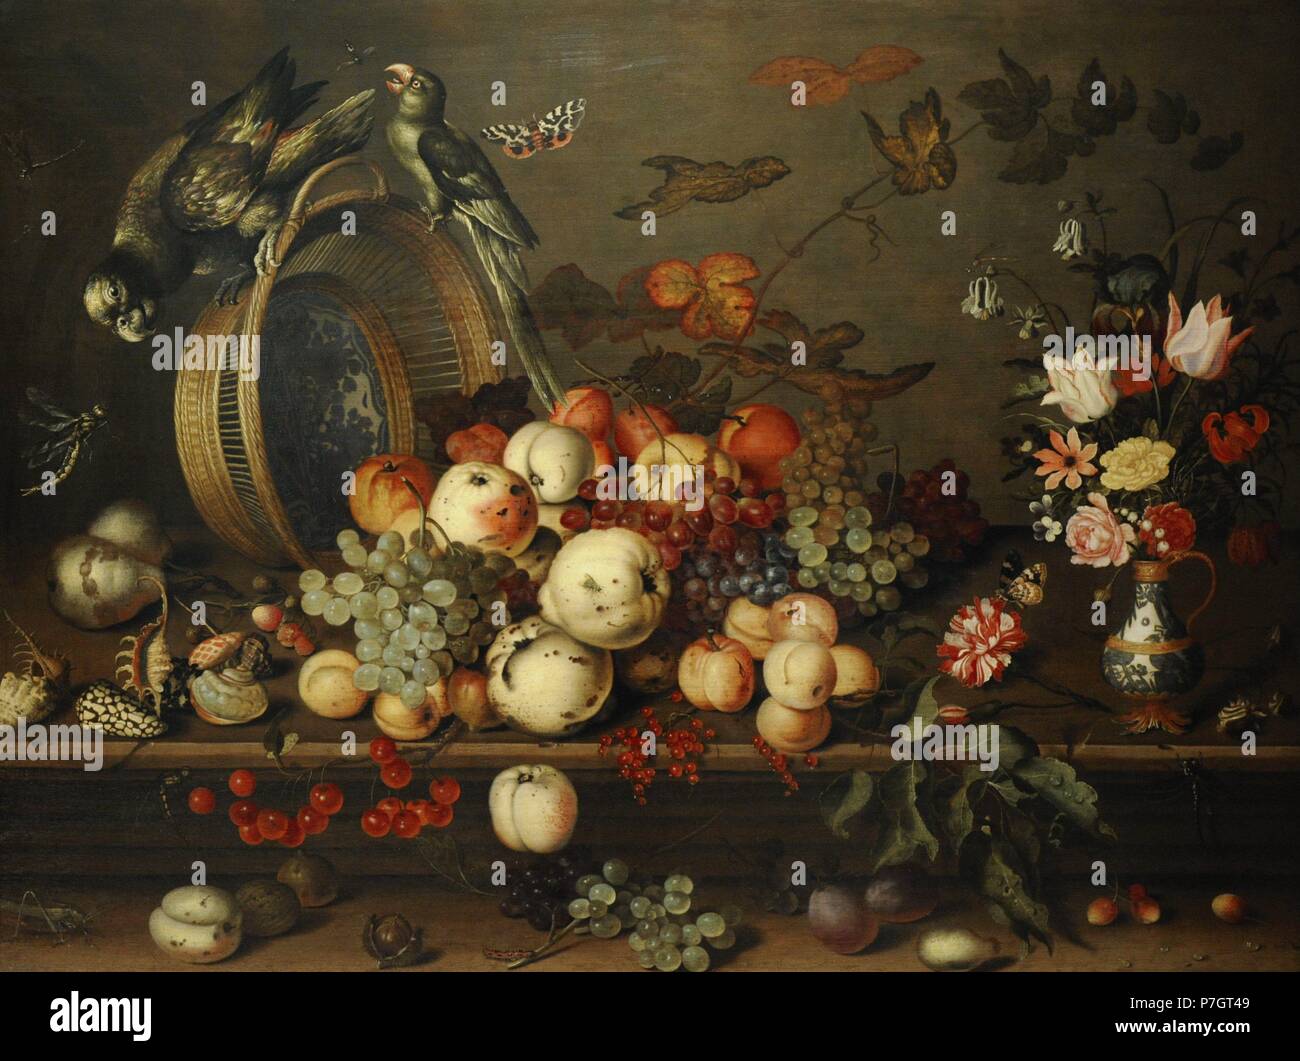 Balthasar van der Ast (1593-1657). Peintre hollandais. Nature morte avec fruits, coquillages et d'insectes, années 1620. Le Musée de l'Ermitage. Saint Petersburg. La Russie. Banque D'Images